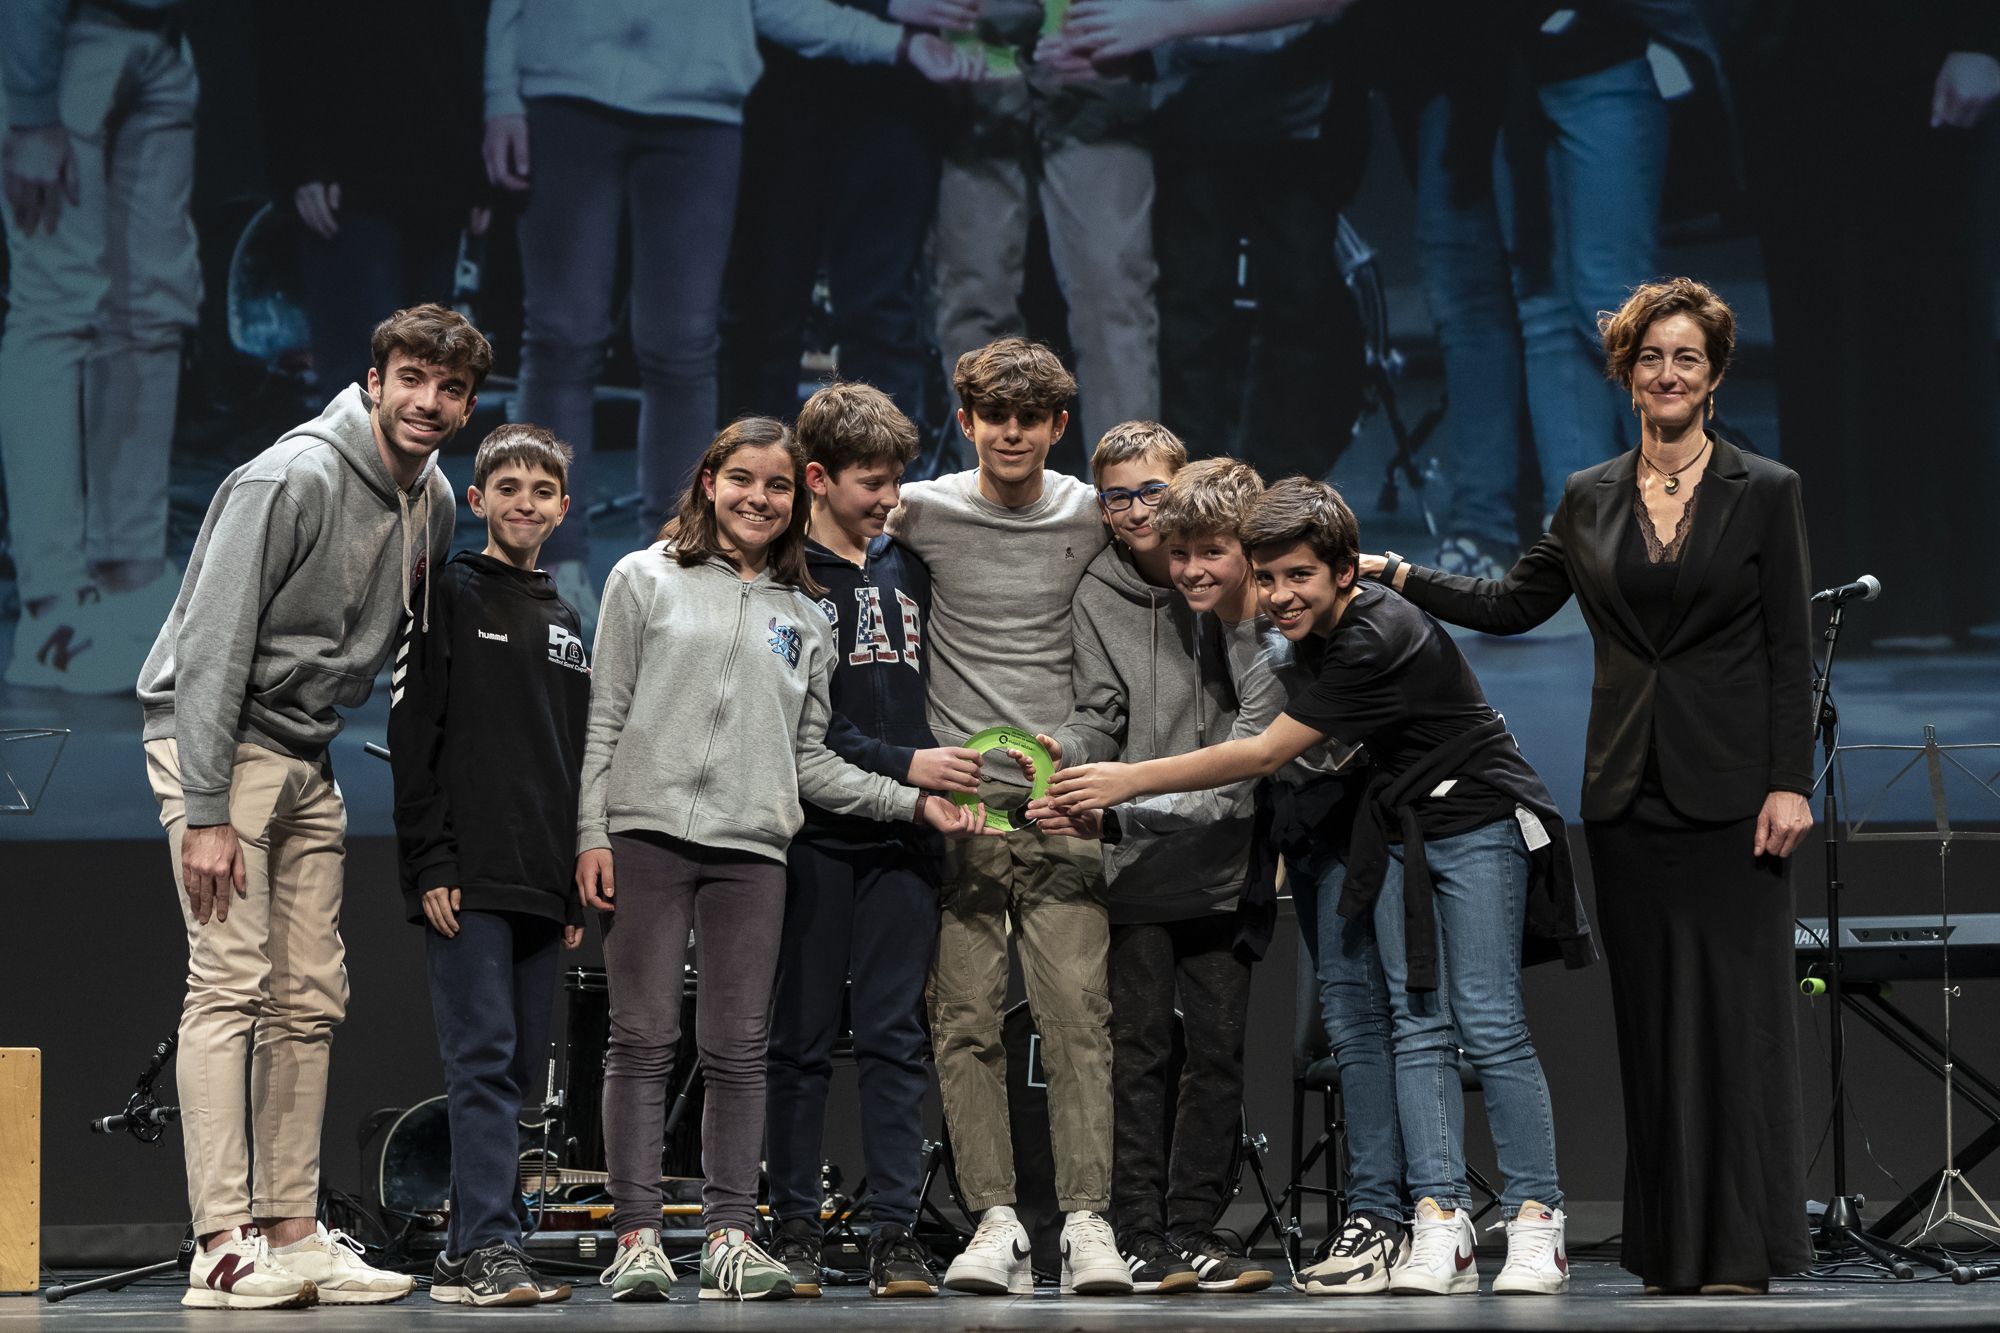 L'equip d'handbol aleví de l'Escola Avenç, guardonat amb el premi a millor 23a edició dels Premis Esport en Marxa. FOTO: Mireia Comas